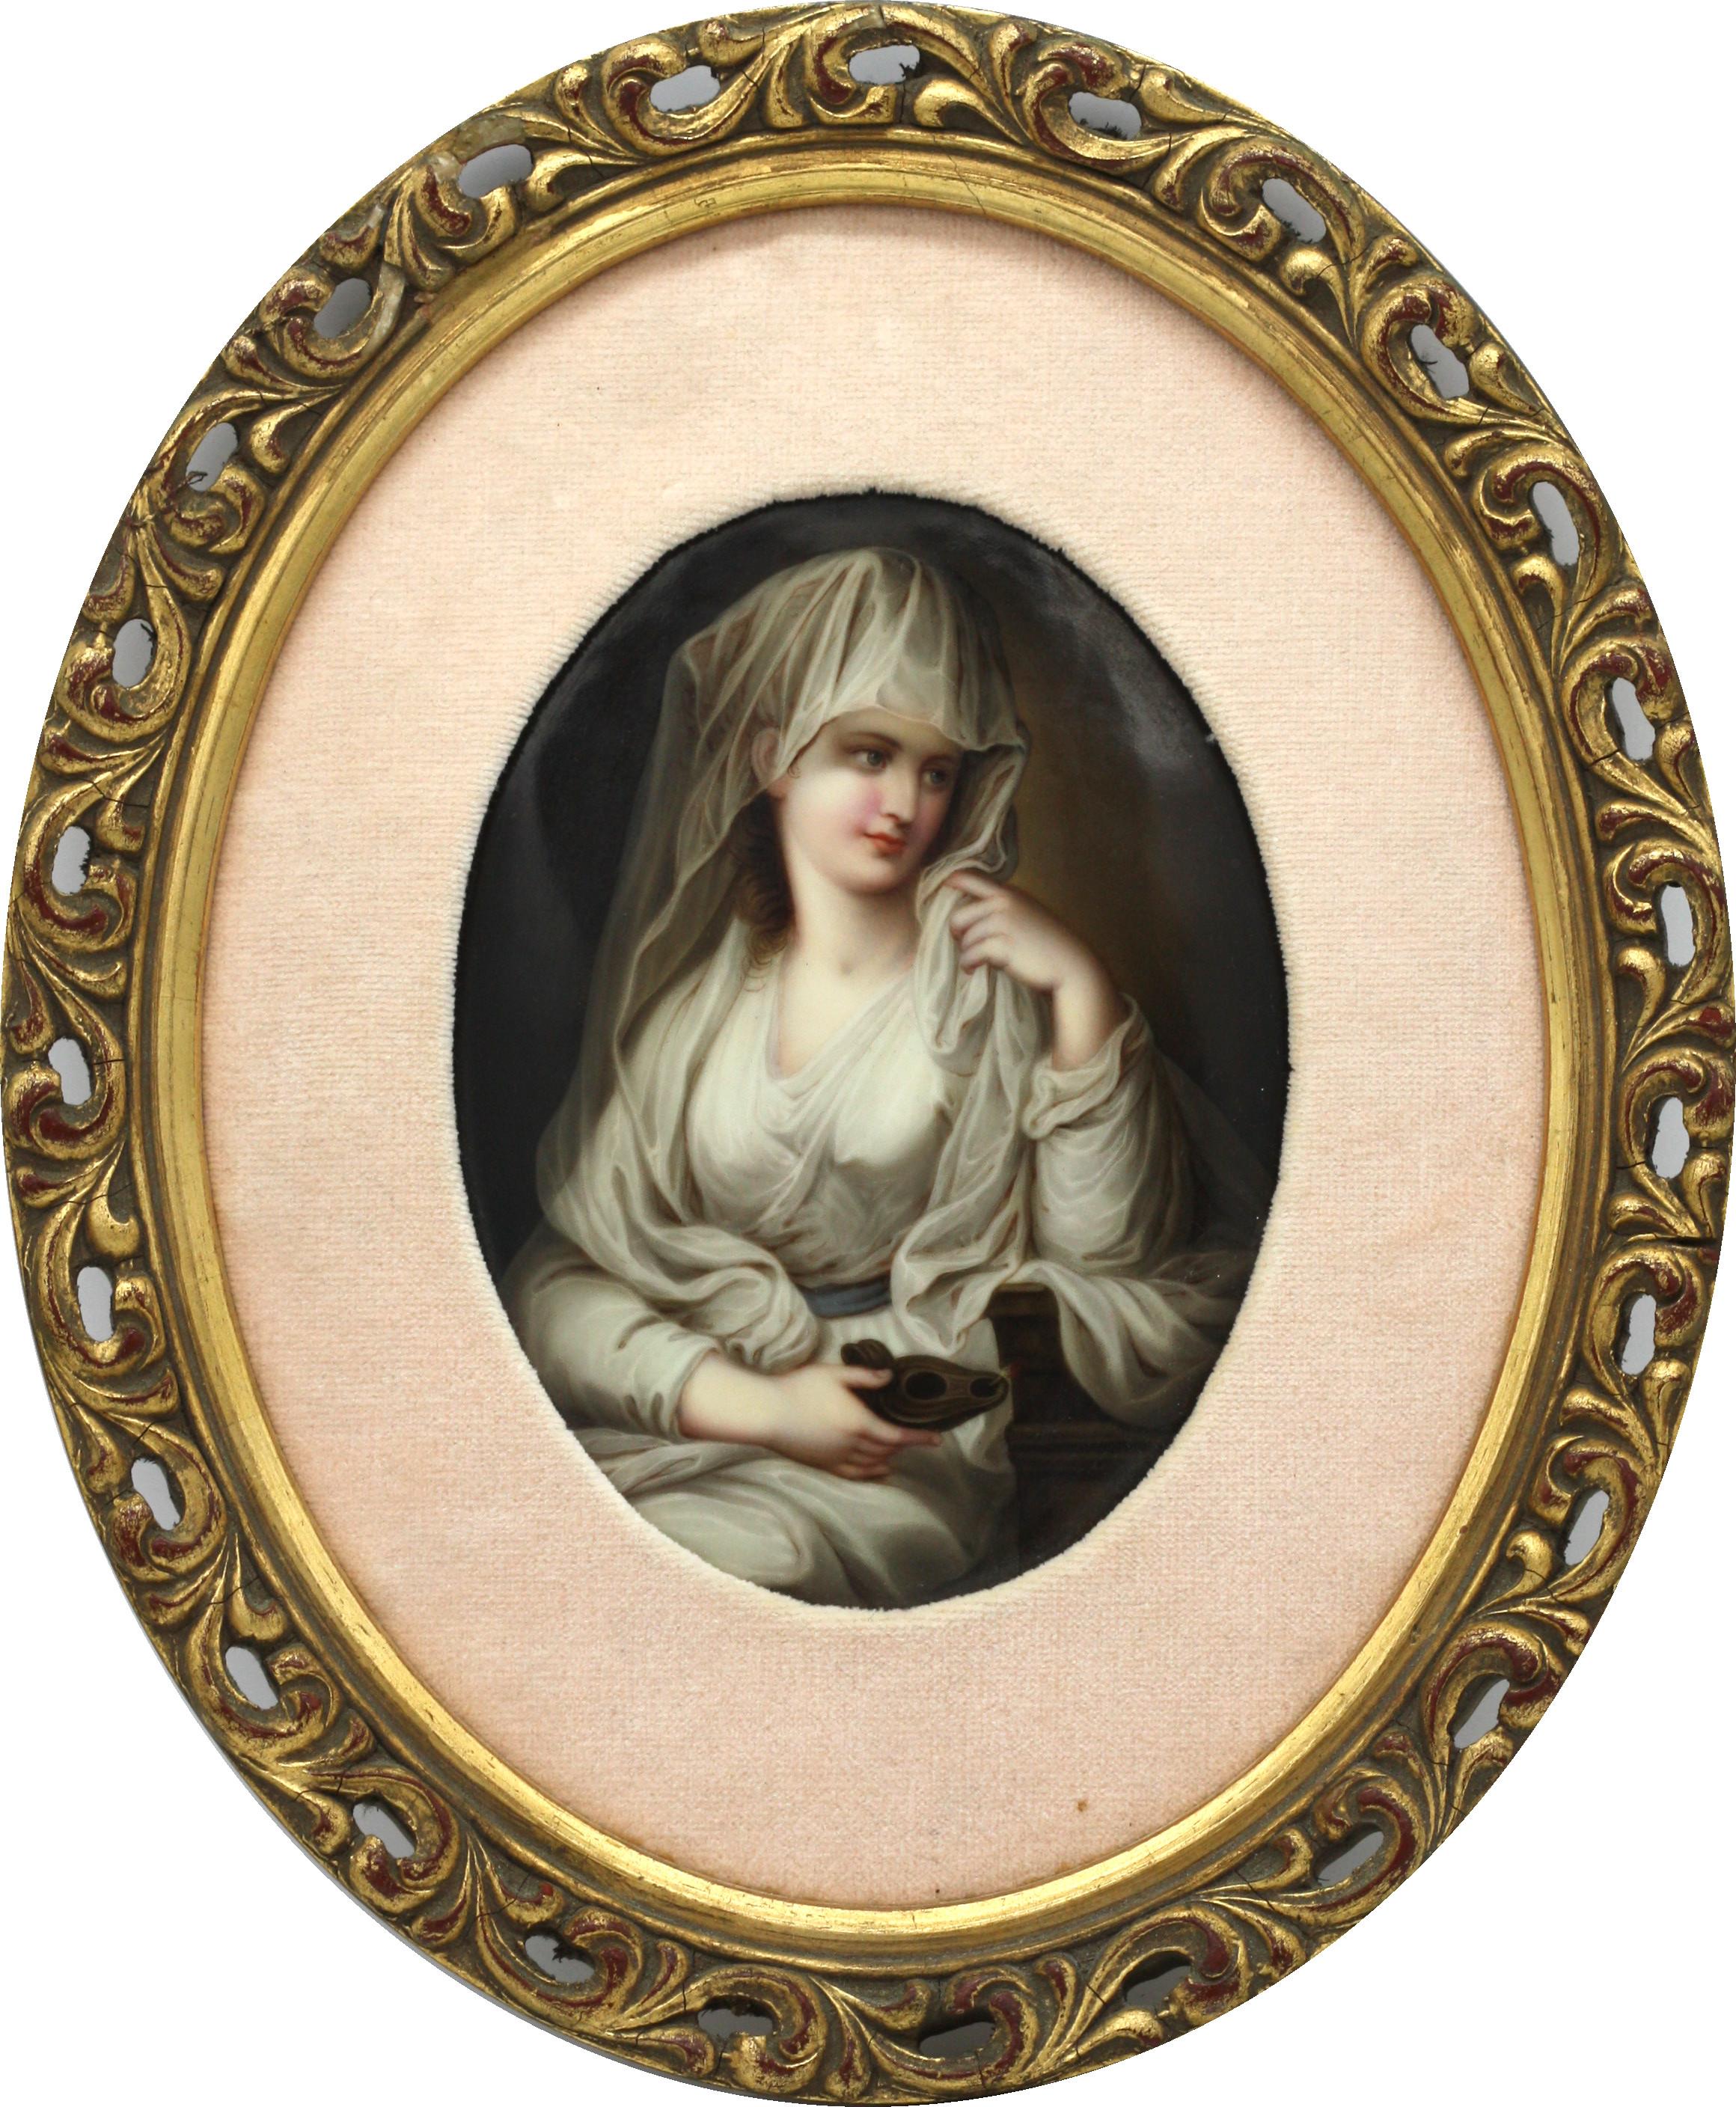 Ovale Porträtplakette aus französischem Porzellan
19. / Anfang 20. Jahrhundert
mit einer Schönheit gemalt, gerahmt
Maße: einschließlich Rahmen 69 cm, 27,16 Zoll hoch.
 